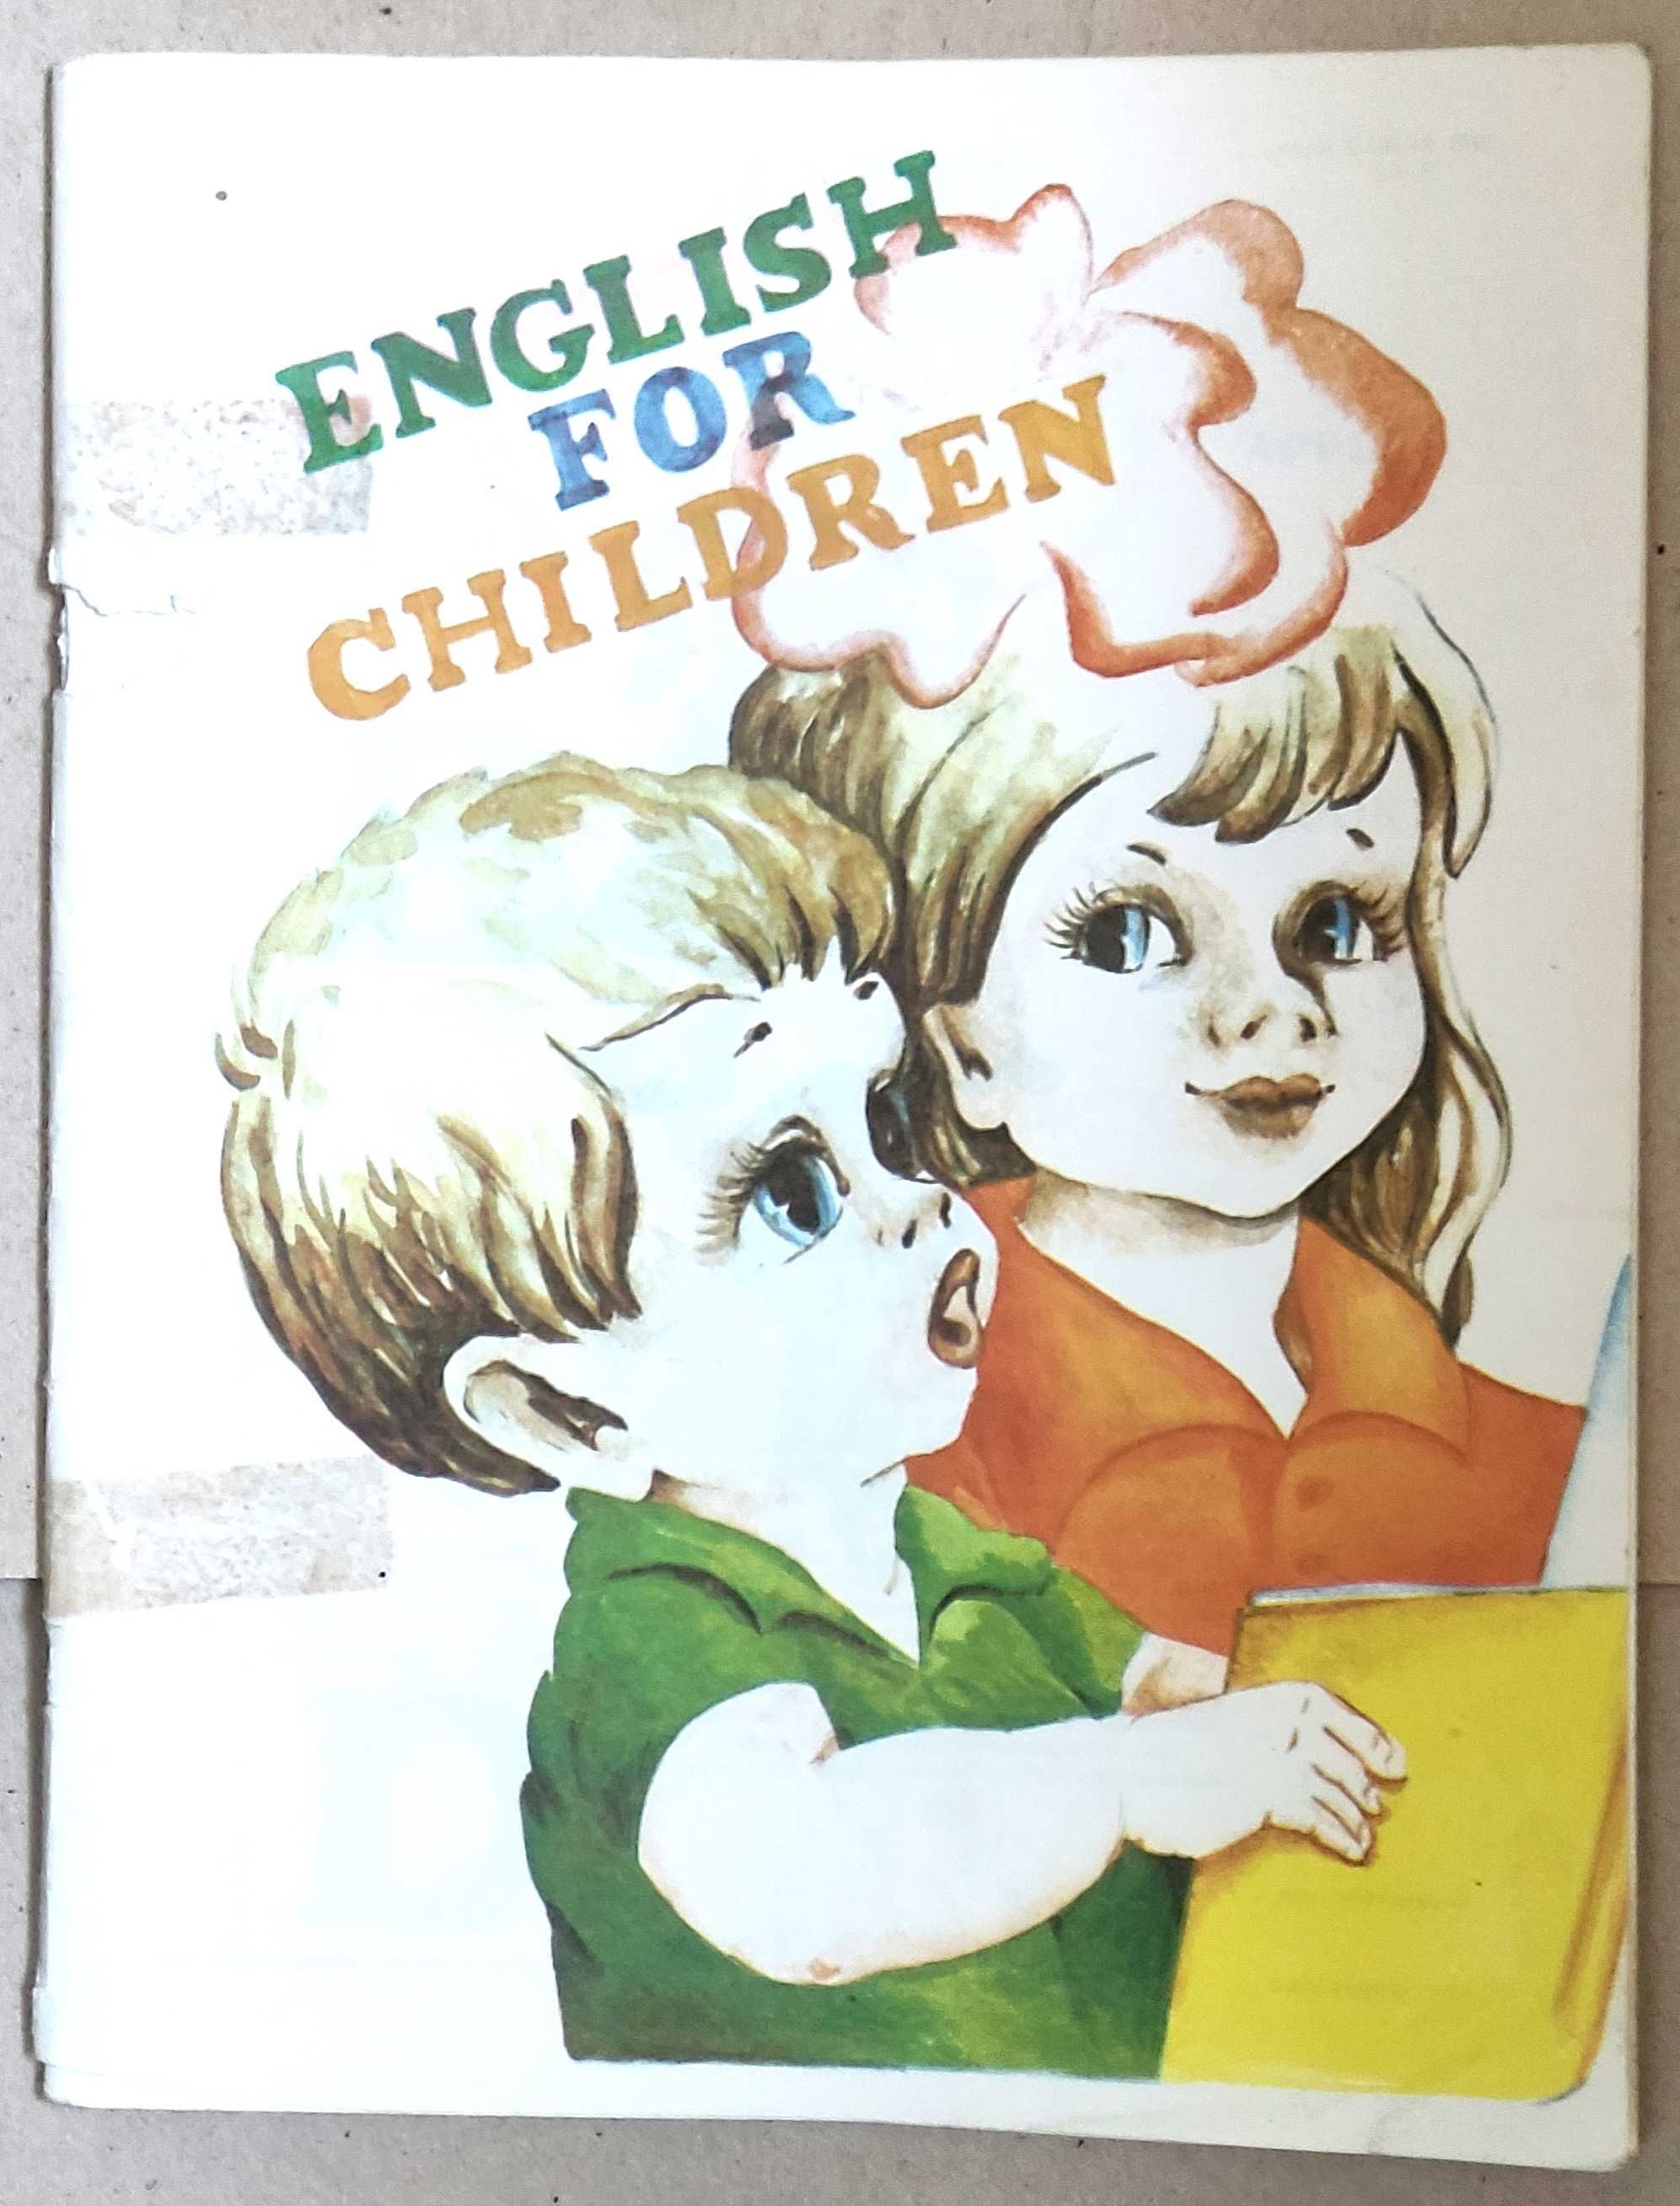 Английский для Детей - "English for children" с Карточками, 1992